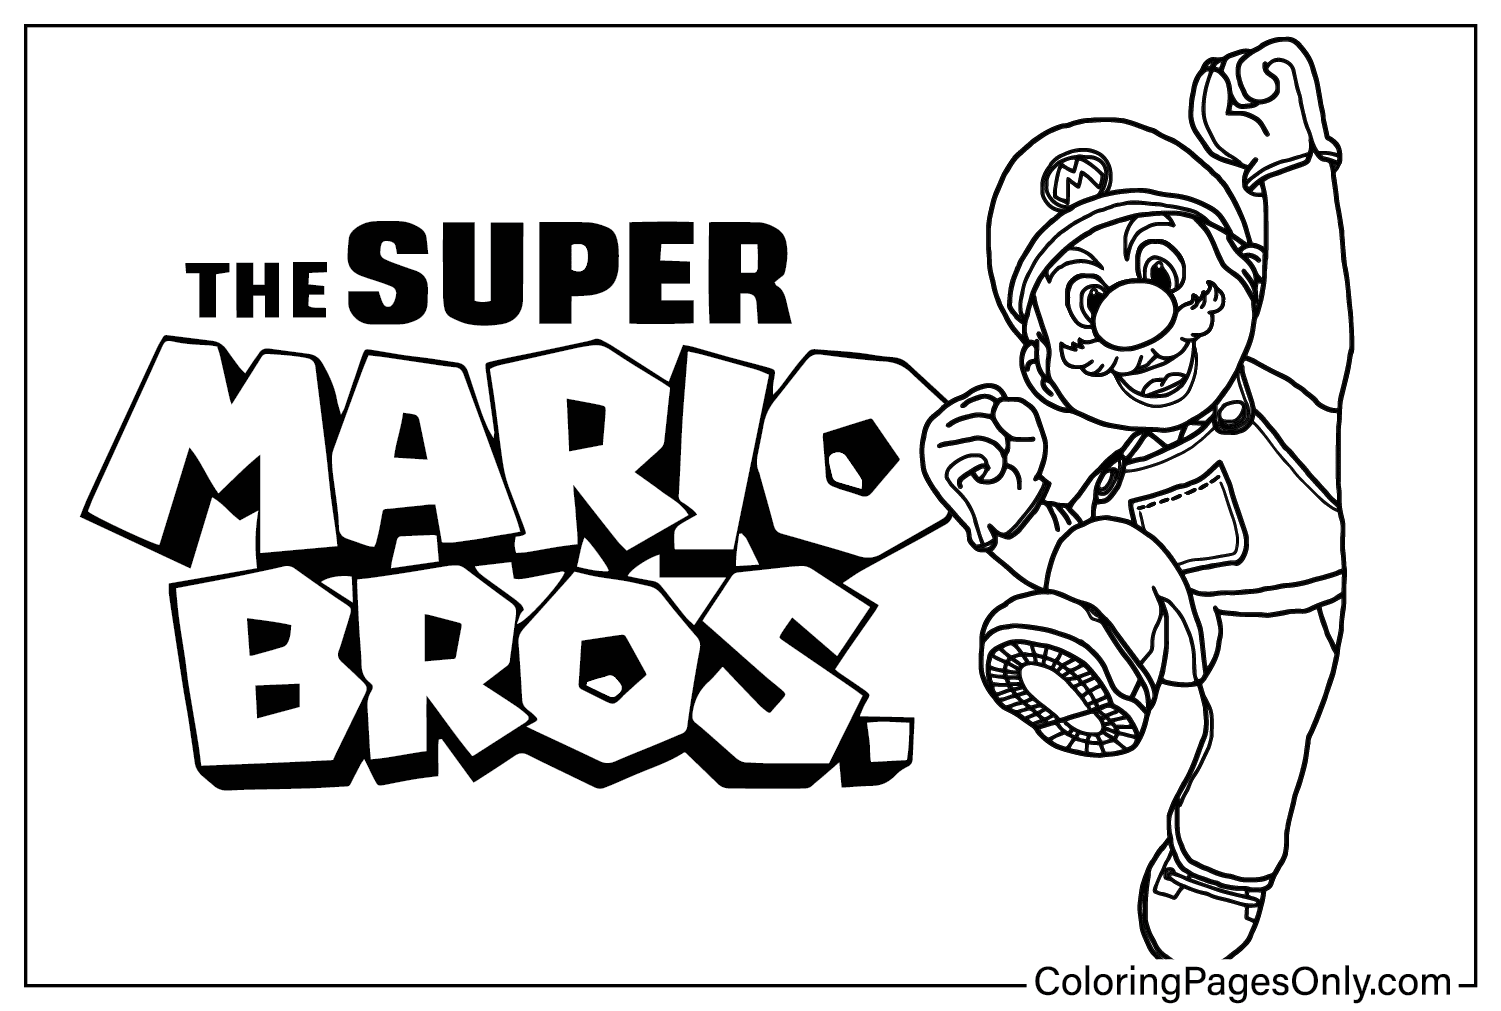 Pagina a colori del film Super Mario Bros. dal film Super Mario Bros.